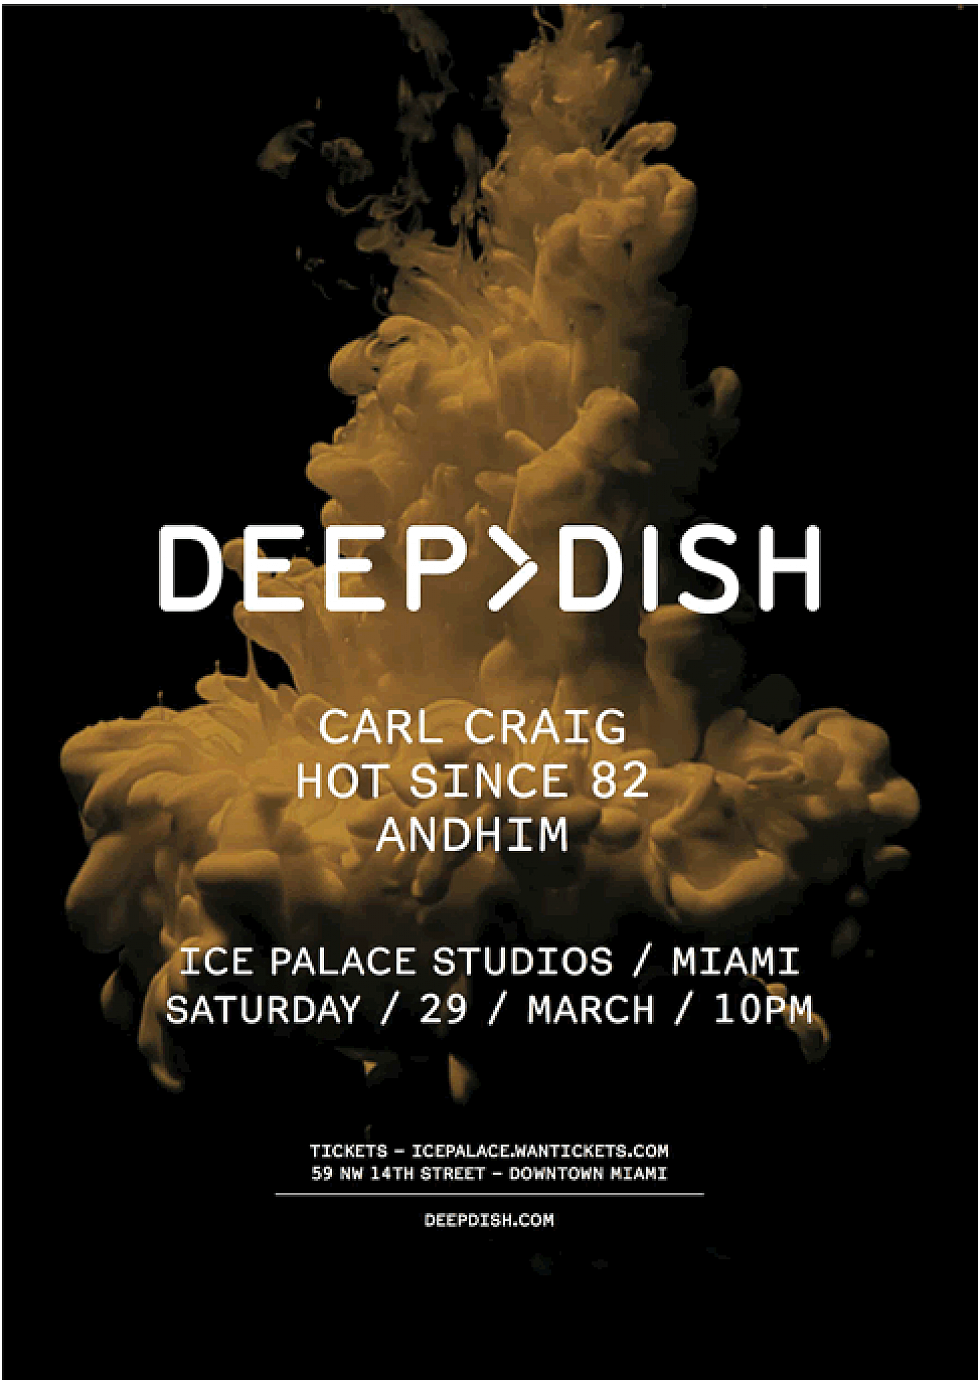 Deep Dish returns during Miami Music Week